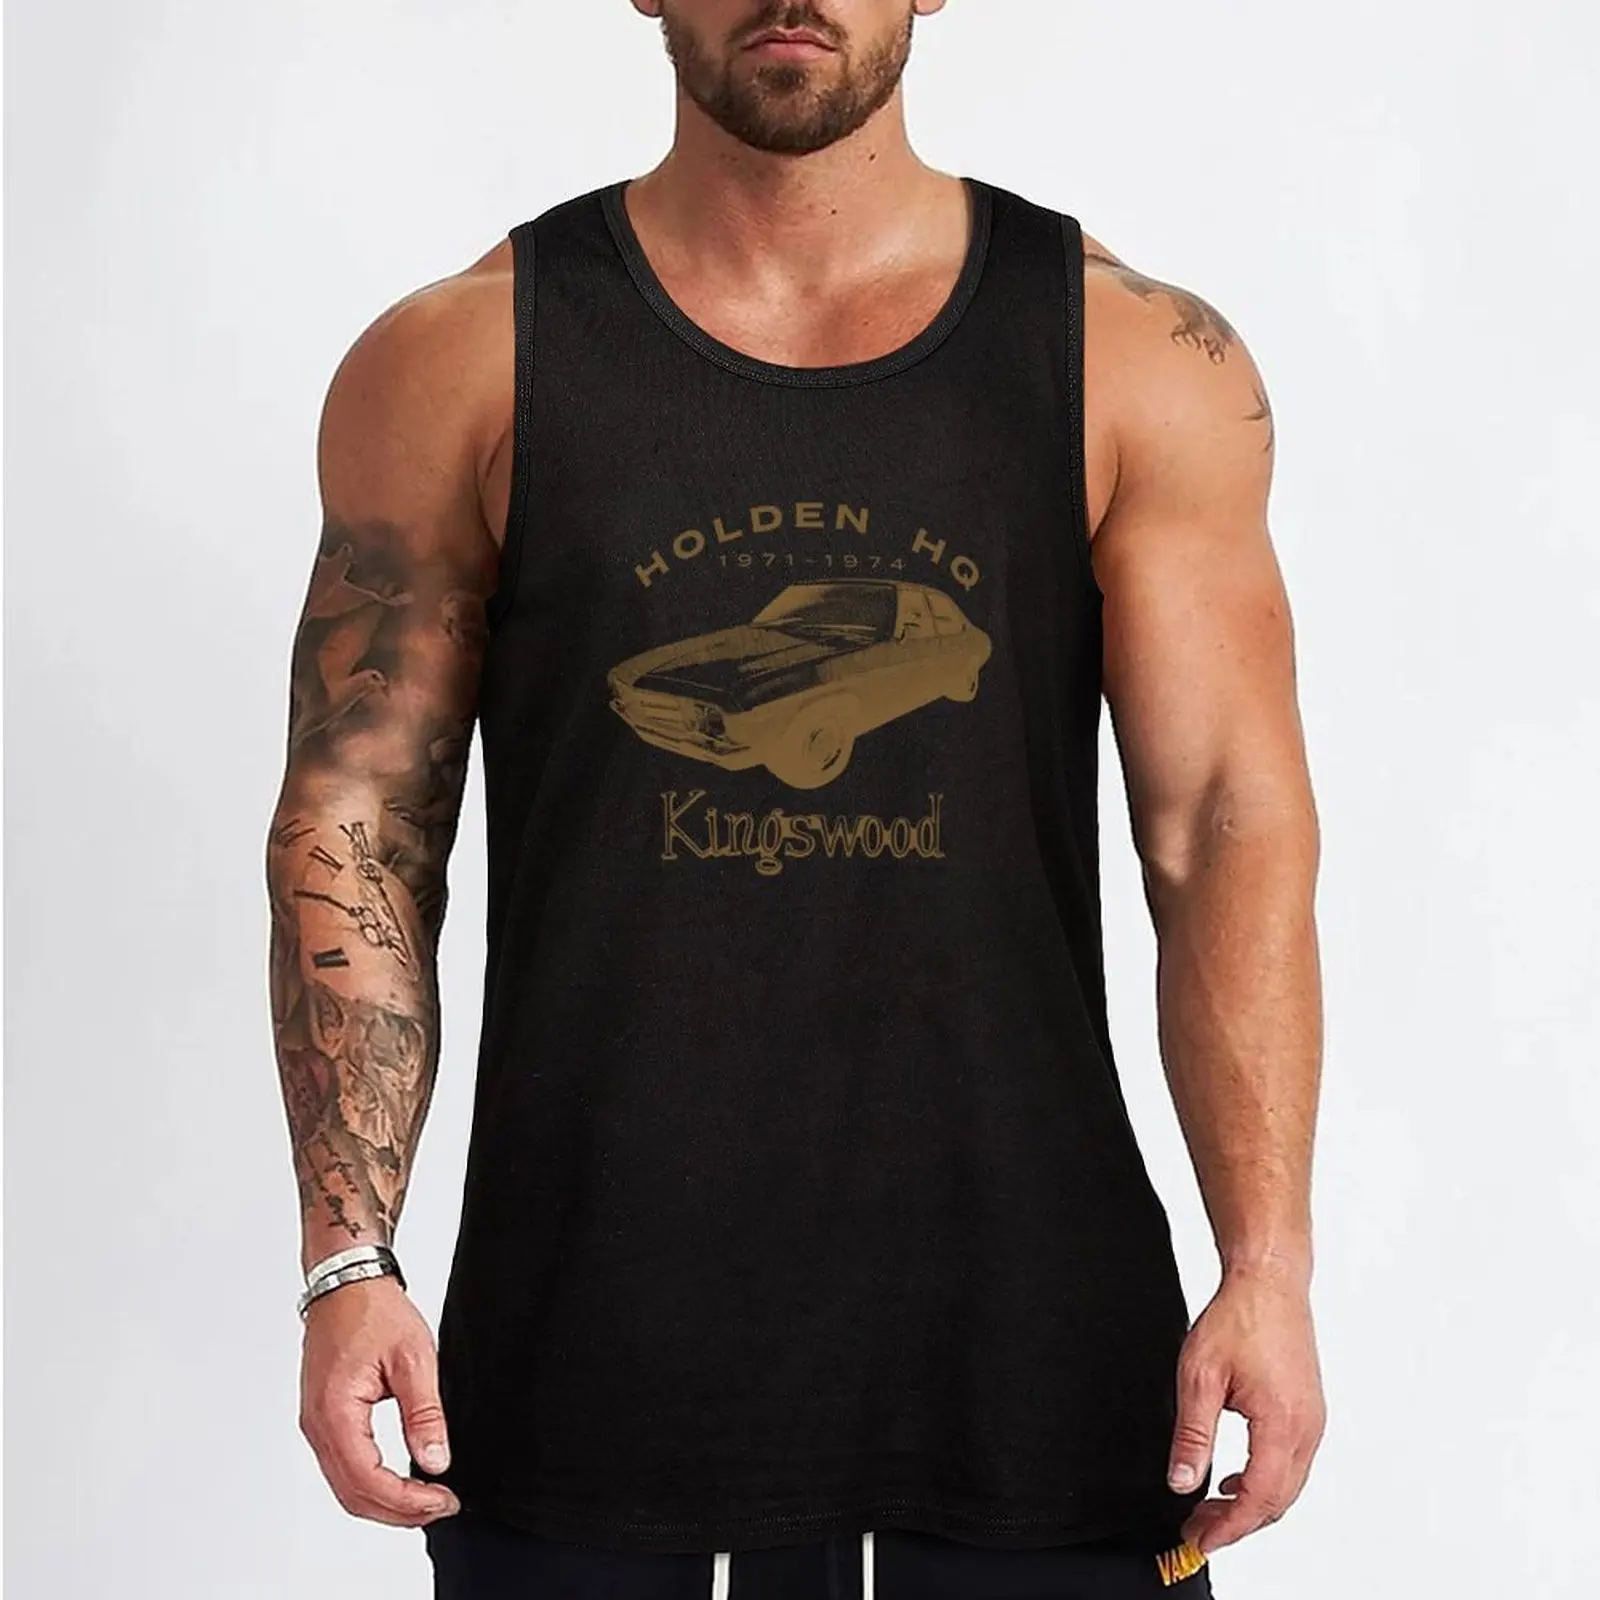 Yeni Holden HQ Kingswood Tank Top kas t-shirt sevimli üstleri Yelek erkek . ' - ' . 1